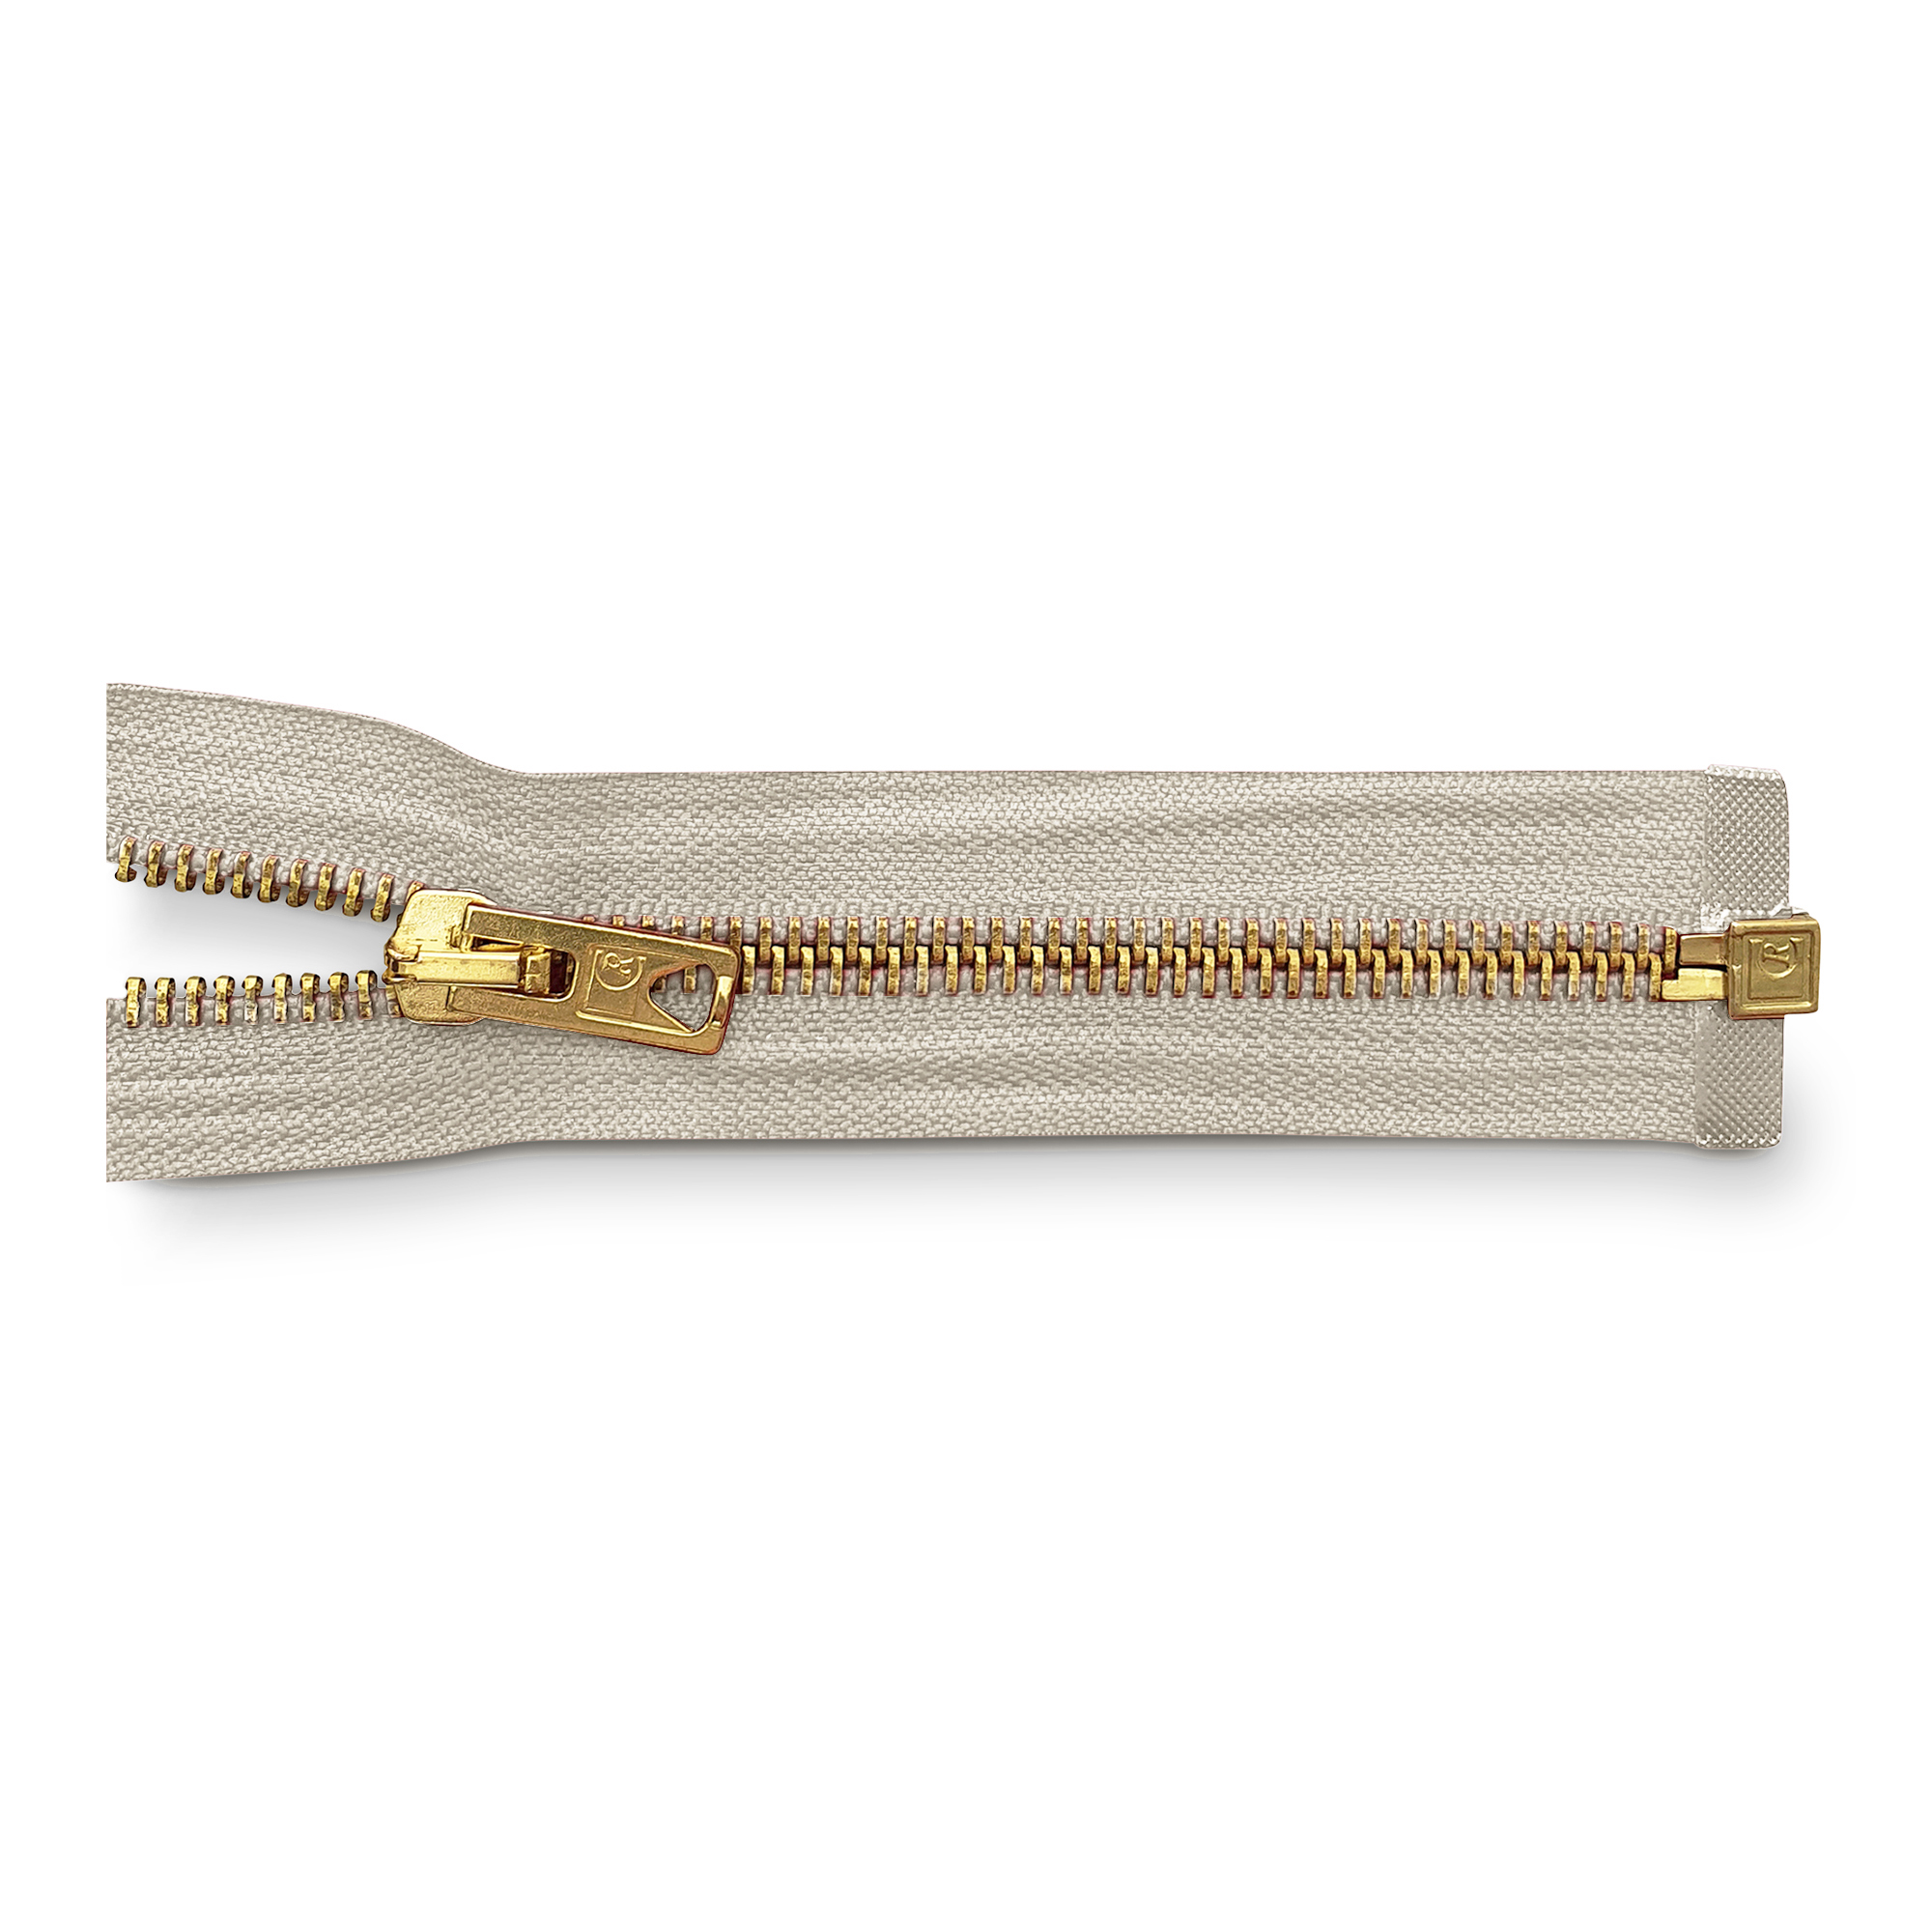 zipper 80cm,divisible, metal, brass, wide, light beige